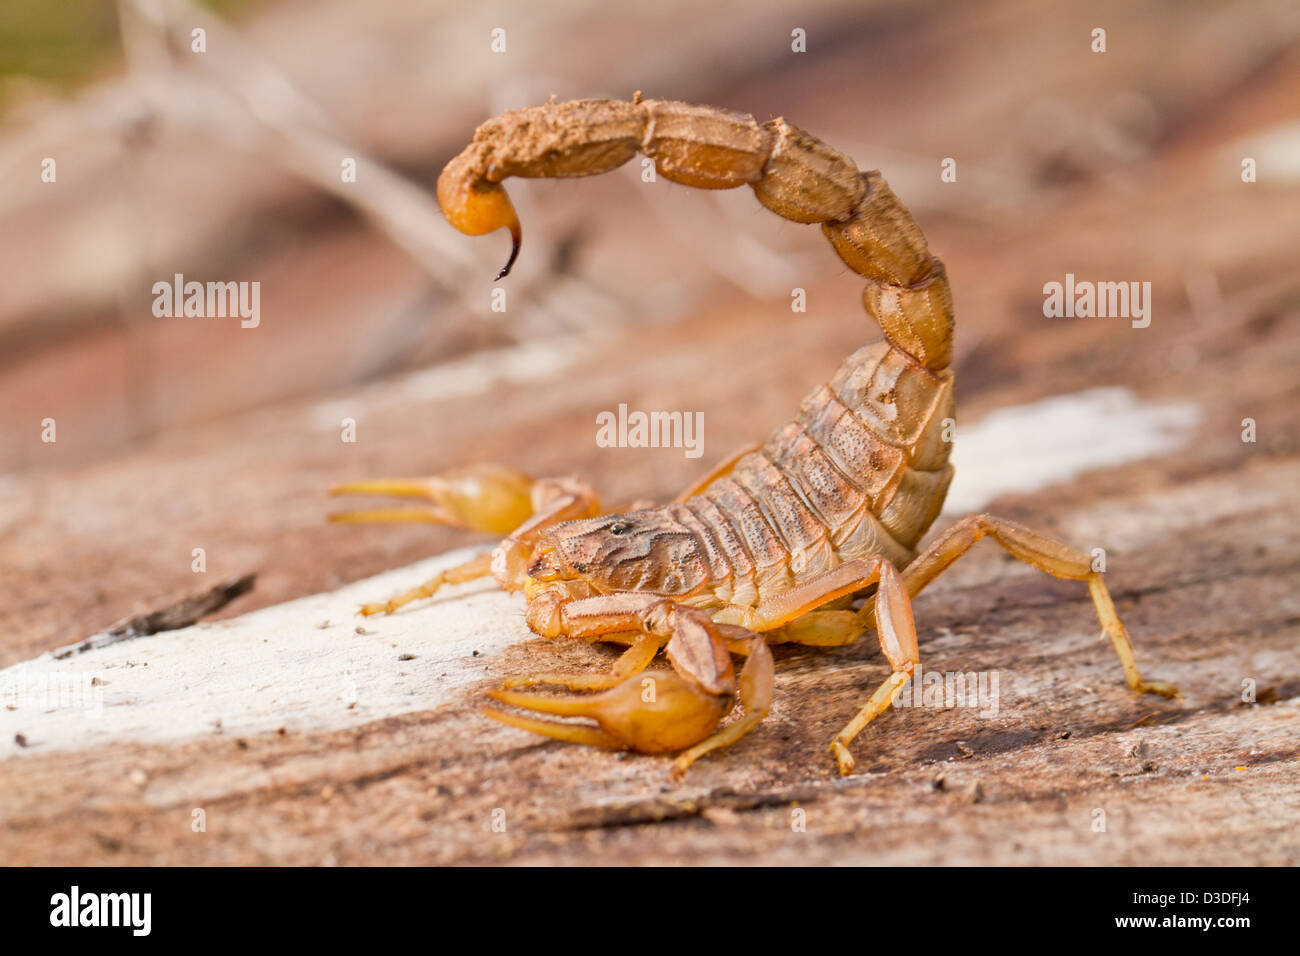 Close view detail of a buthus scorpion (scorpio occitanus). Stock Photo